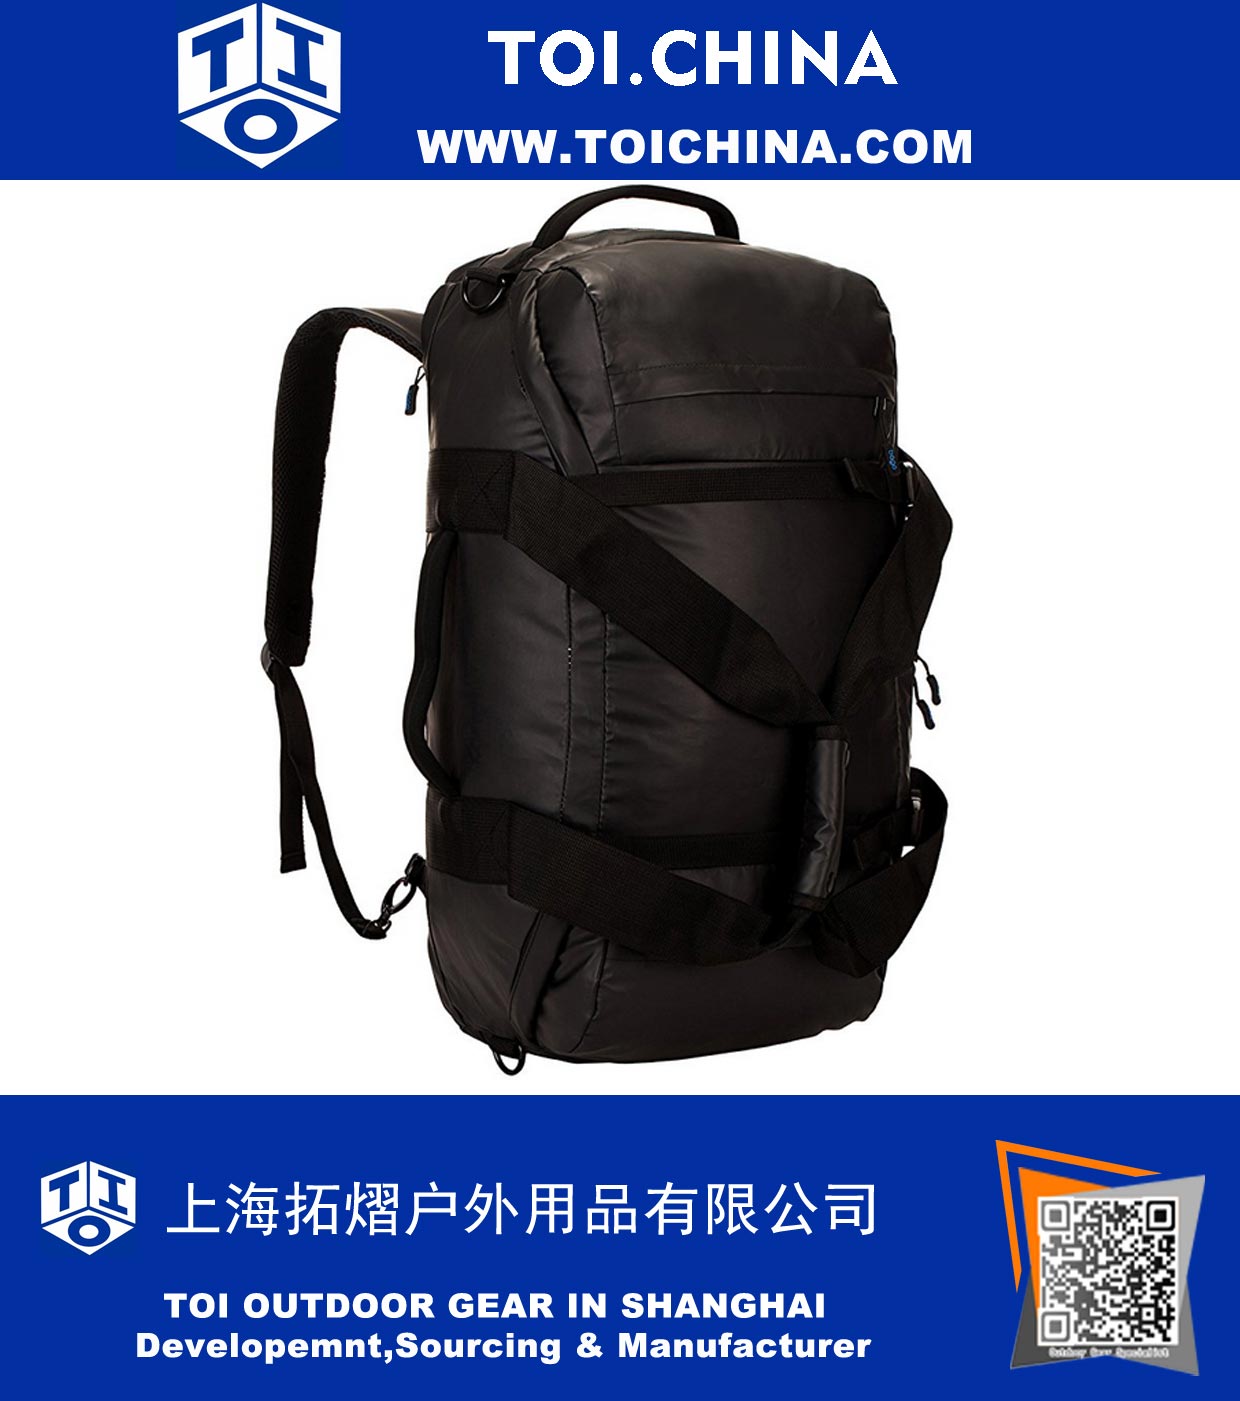 Duffel Bag Convertible to Backpack. Mochila multifuncional de viaje, mochila o equipo deportivo para hombres y mujeres. Duffle durable y plegable para vuelos y viajes